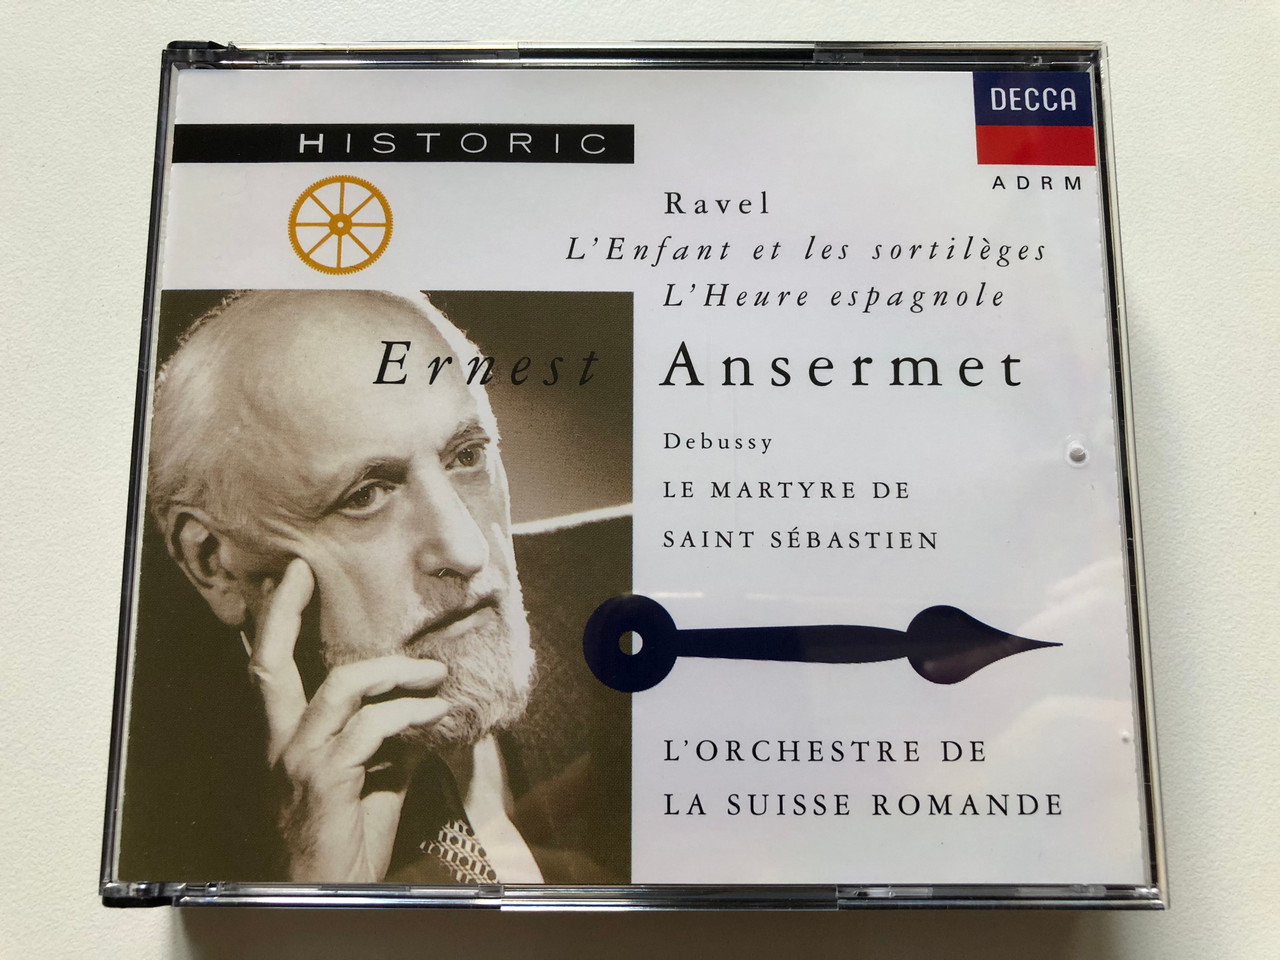 https://cdn10.bigcommerce.com/s-62bdpkt7pb/products/0/images/312470/Ravel_-_LEnfant_Et_Les_Sortilges_L_Heure_Espagnole_Debussy_-_Le_Martyre_De_Saint_Sbastien_-_Ernest_Ansermet_LOrchestre_De_La_Suisse_Romande_Historic_Decca_2x_Audio_CD_1992_Stereo_M_1__13273.1700039645.1280.1280.JPG?c=2